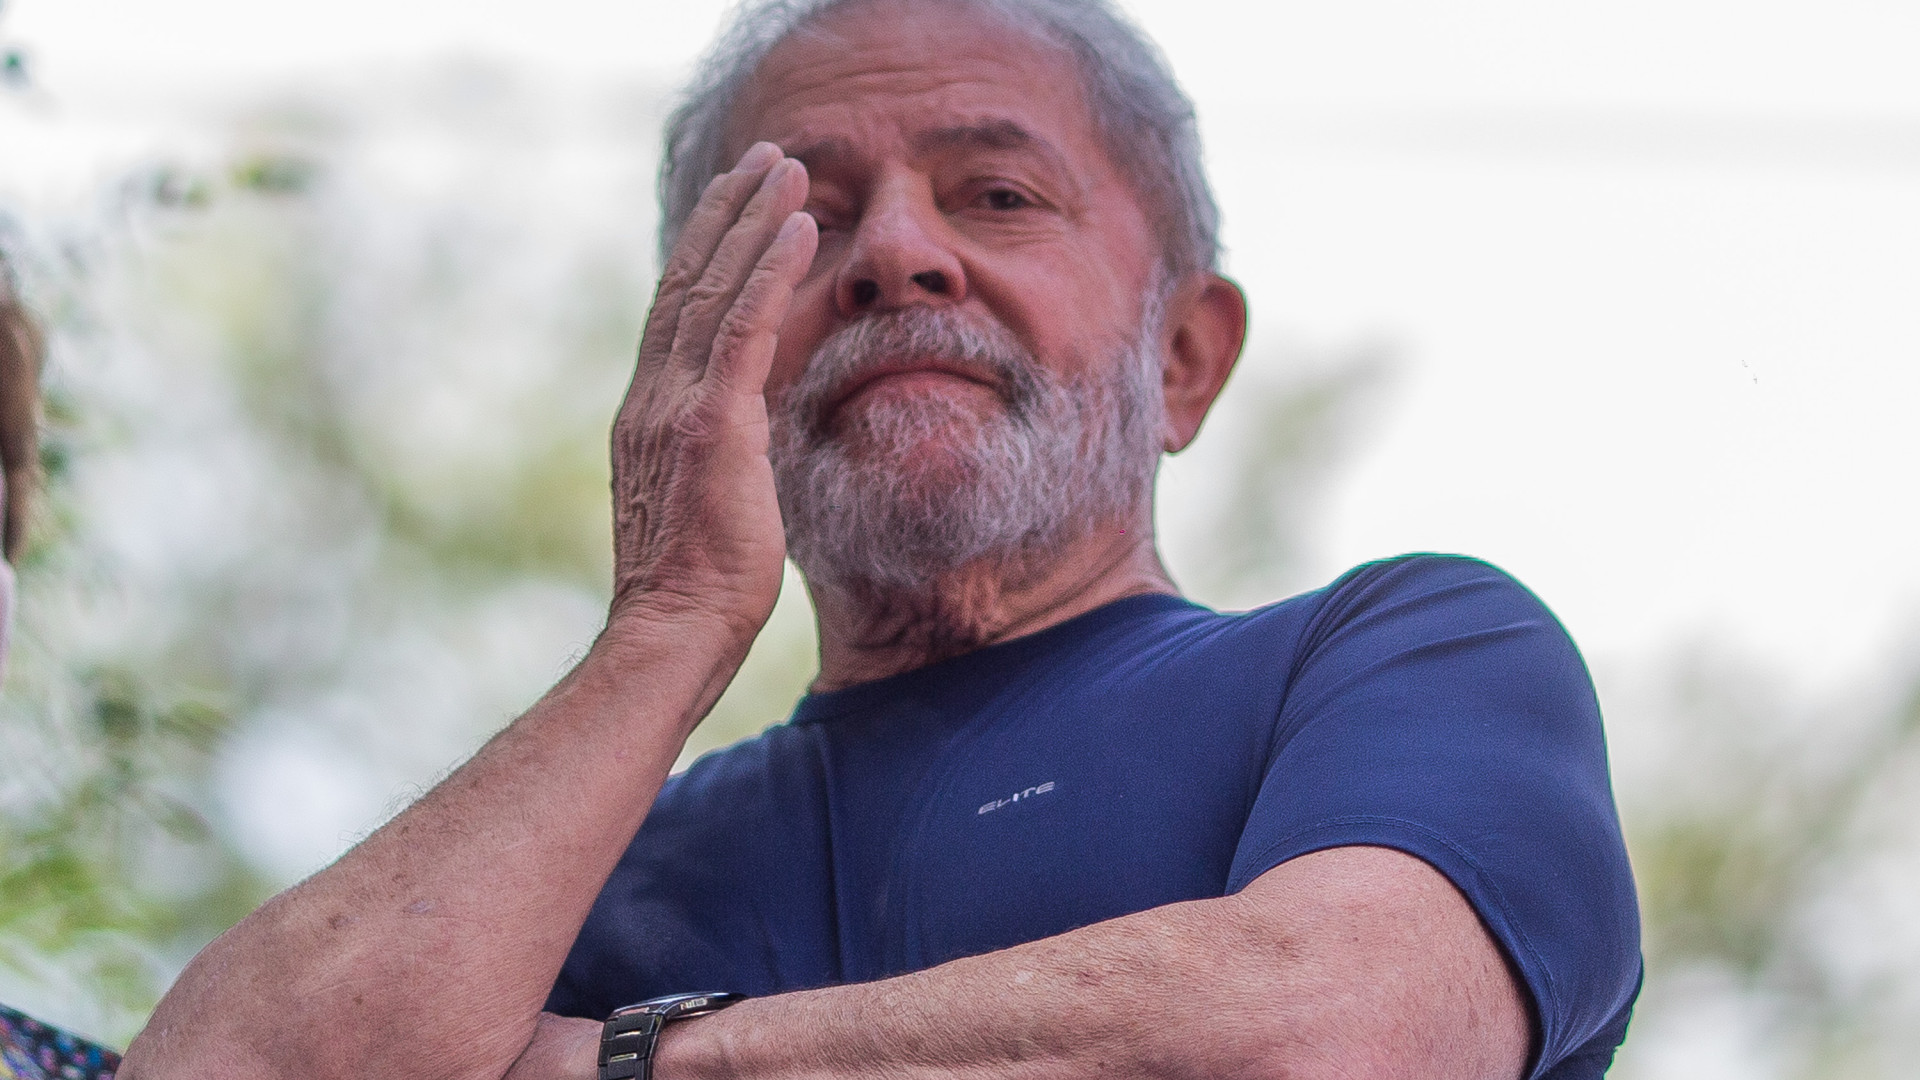 TRF-4 decidirá no dia 30 se mantém condenação de Lula no caso do sítio